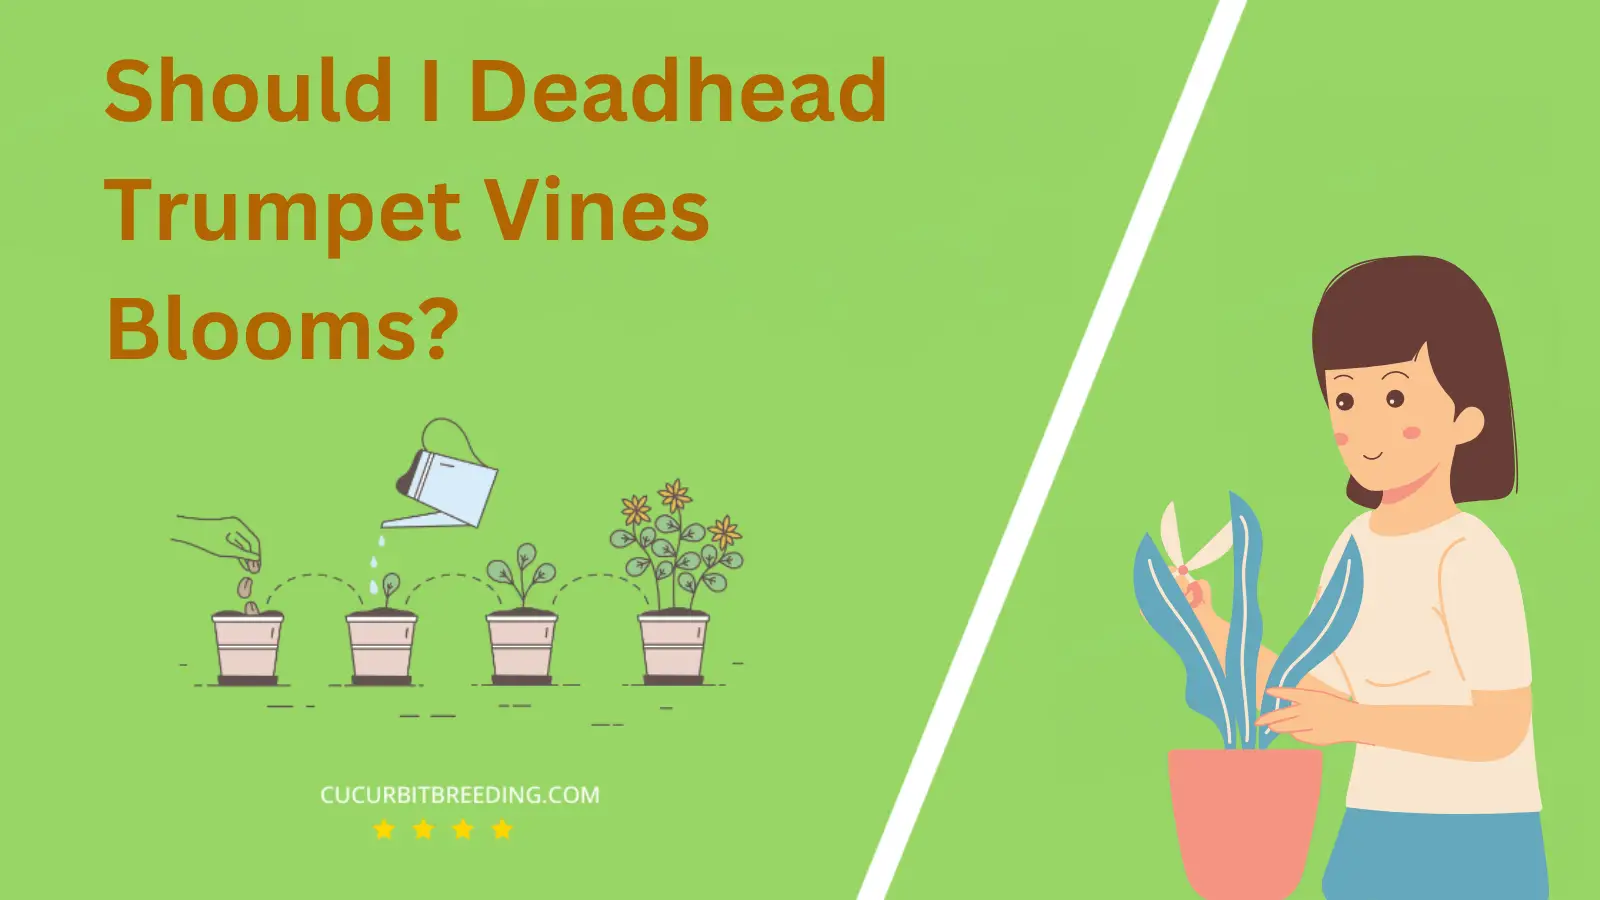 Should I Deadhead Trumpet Vines Blooms?